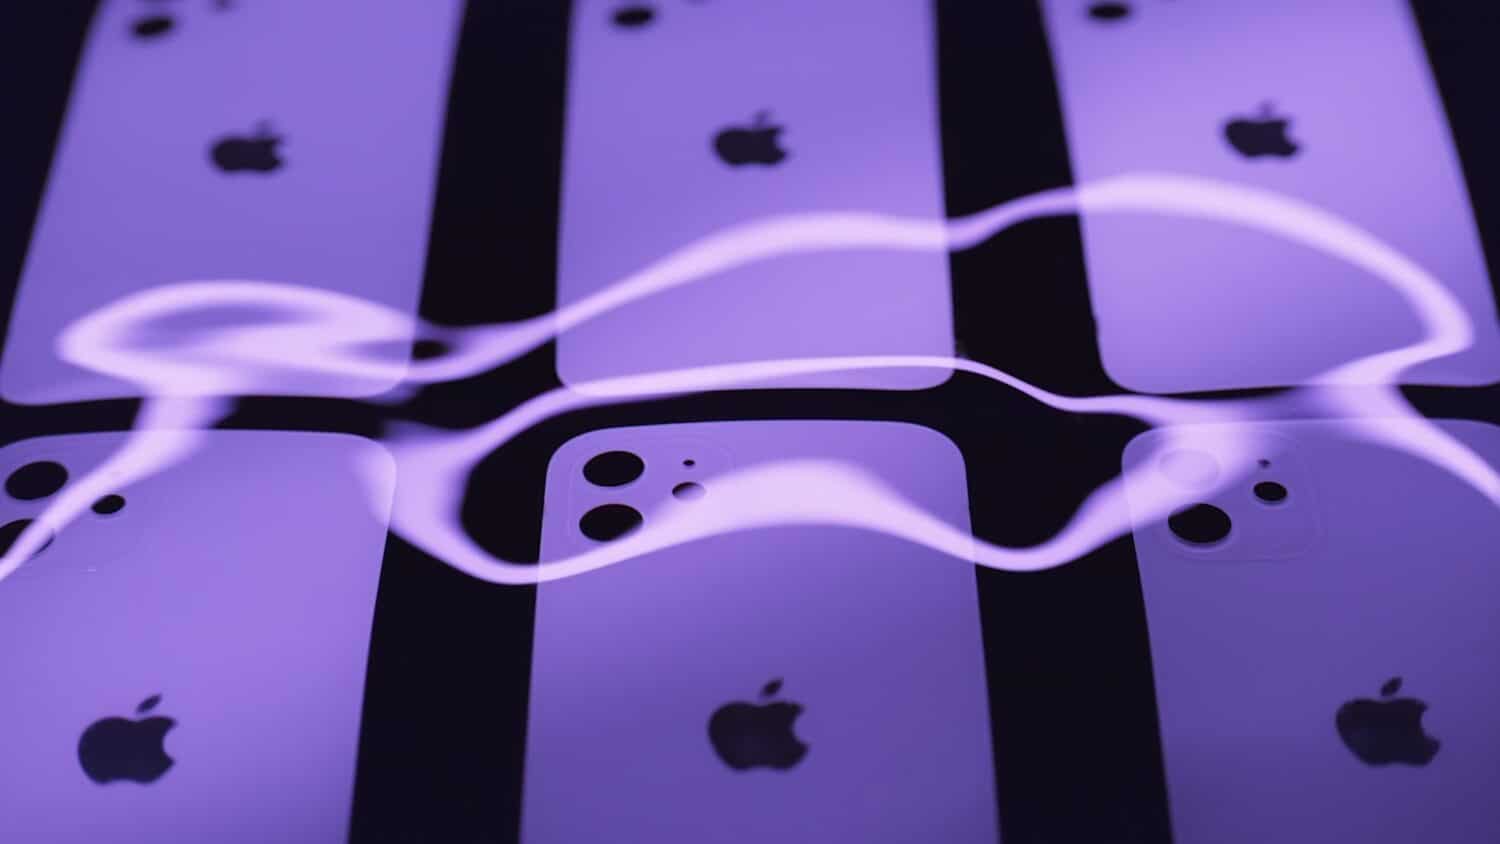 Apple bat une nouvelle fois des records de vente, grâce aux iPhone